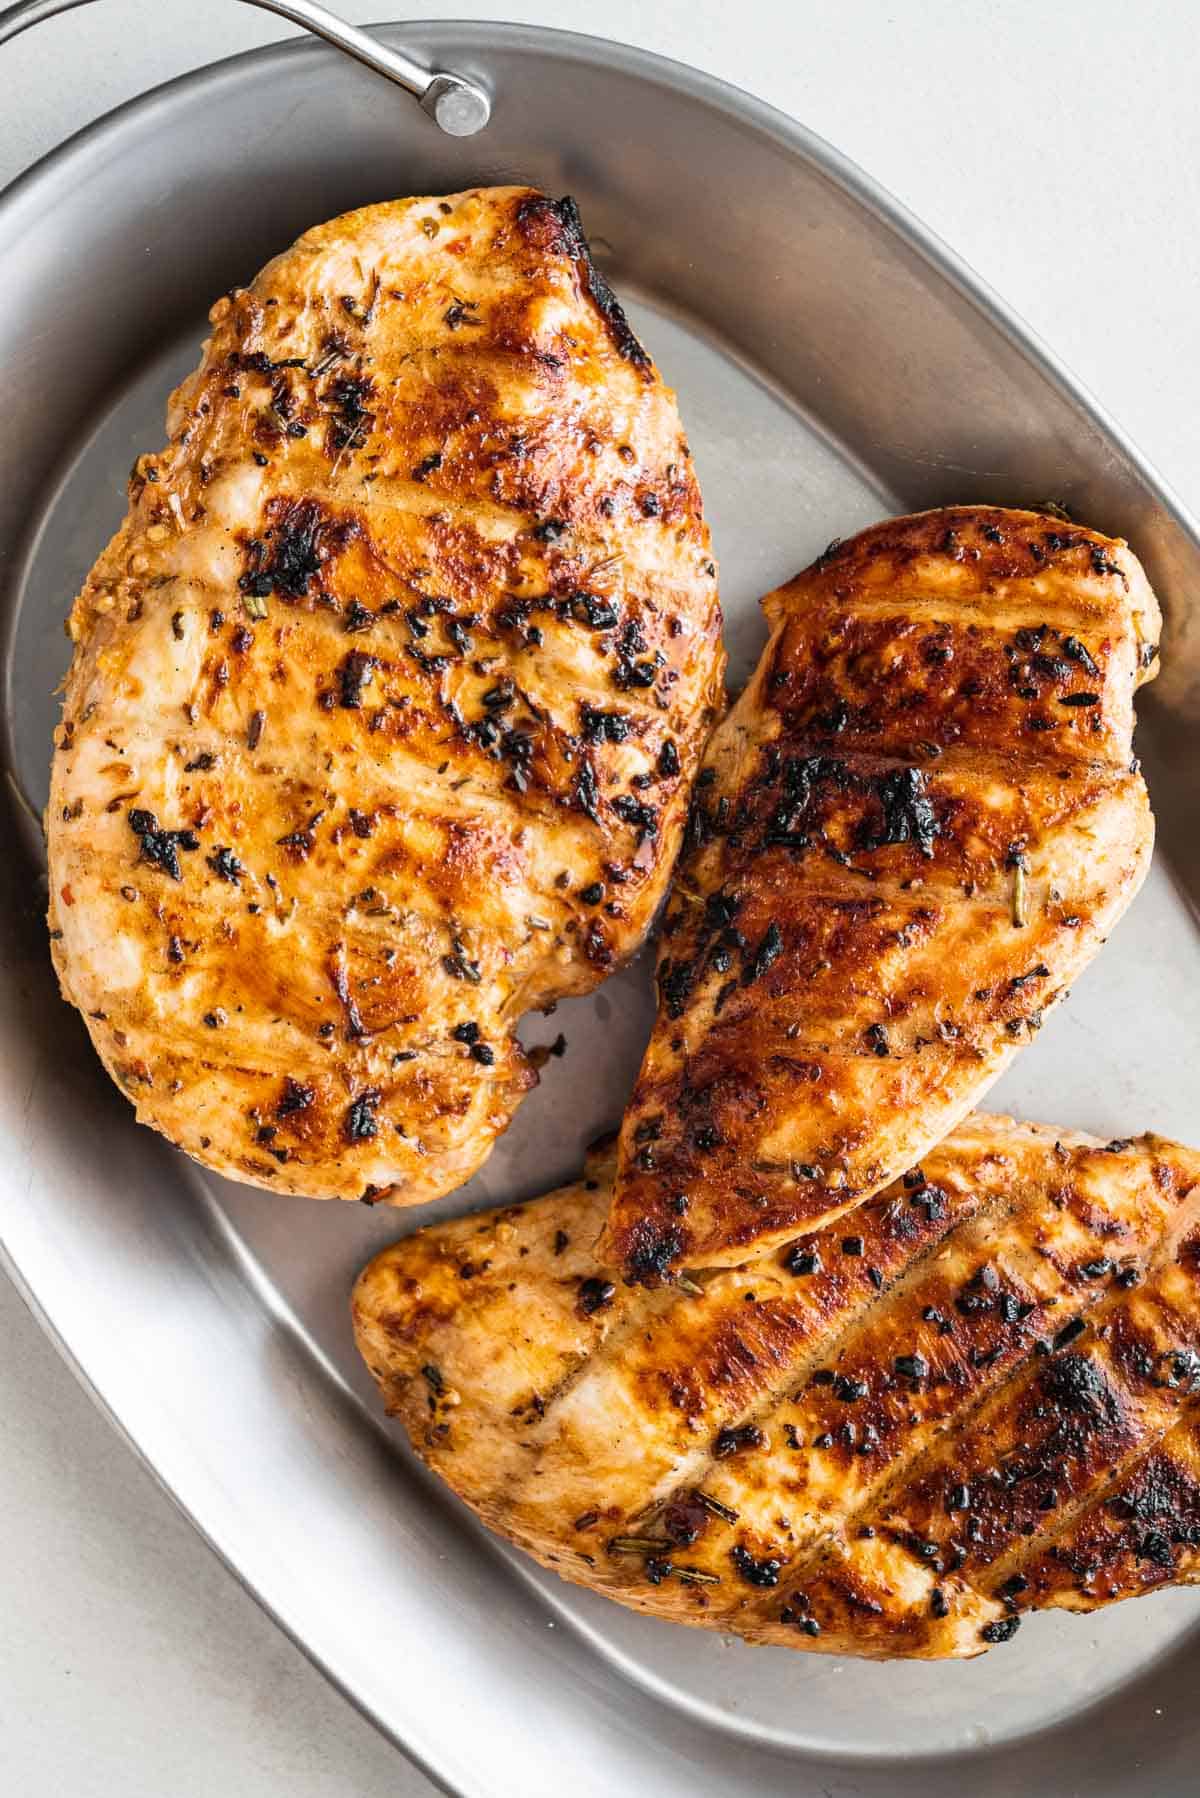 Lean grilled chicken